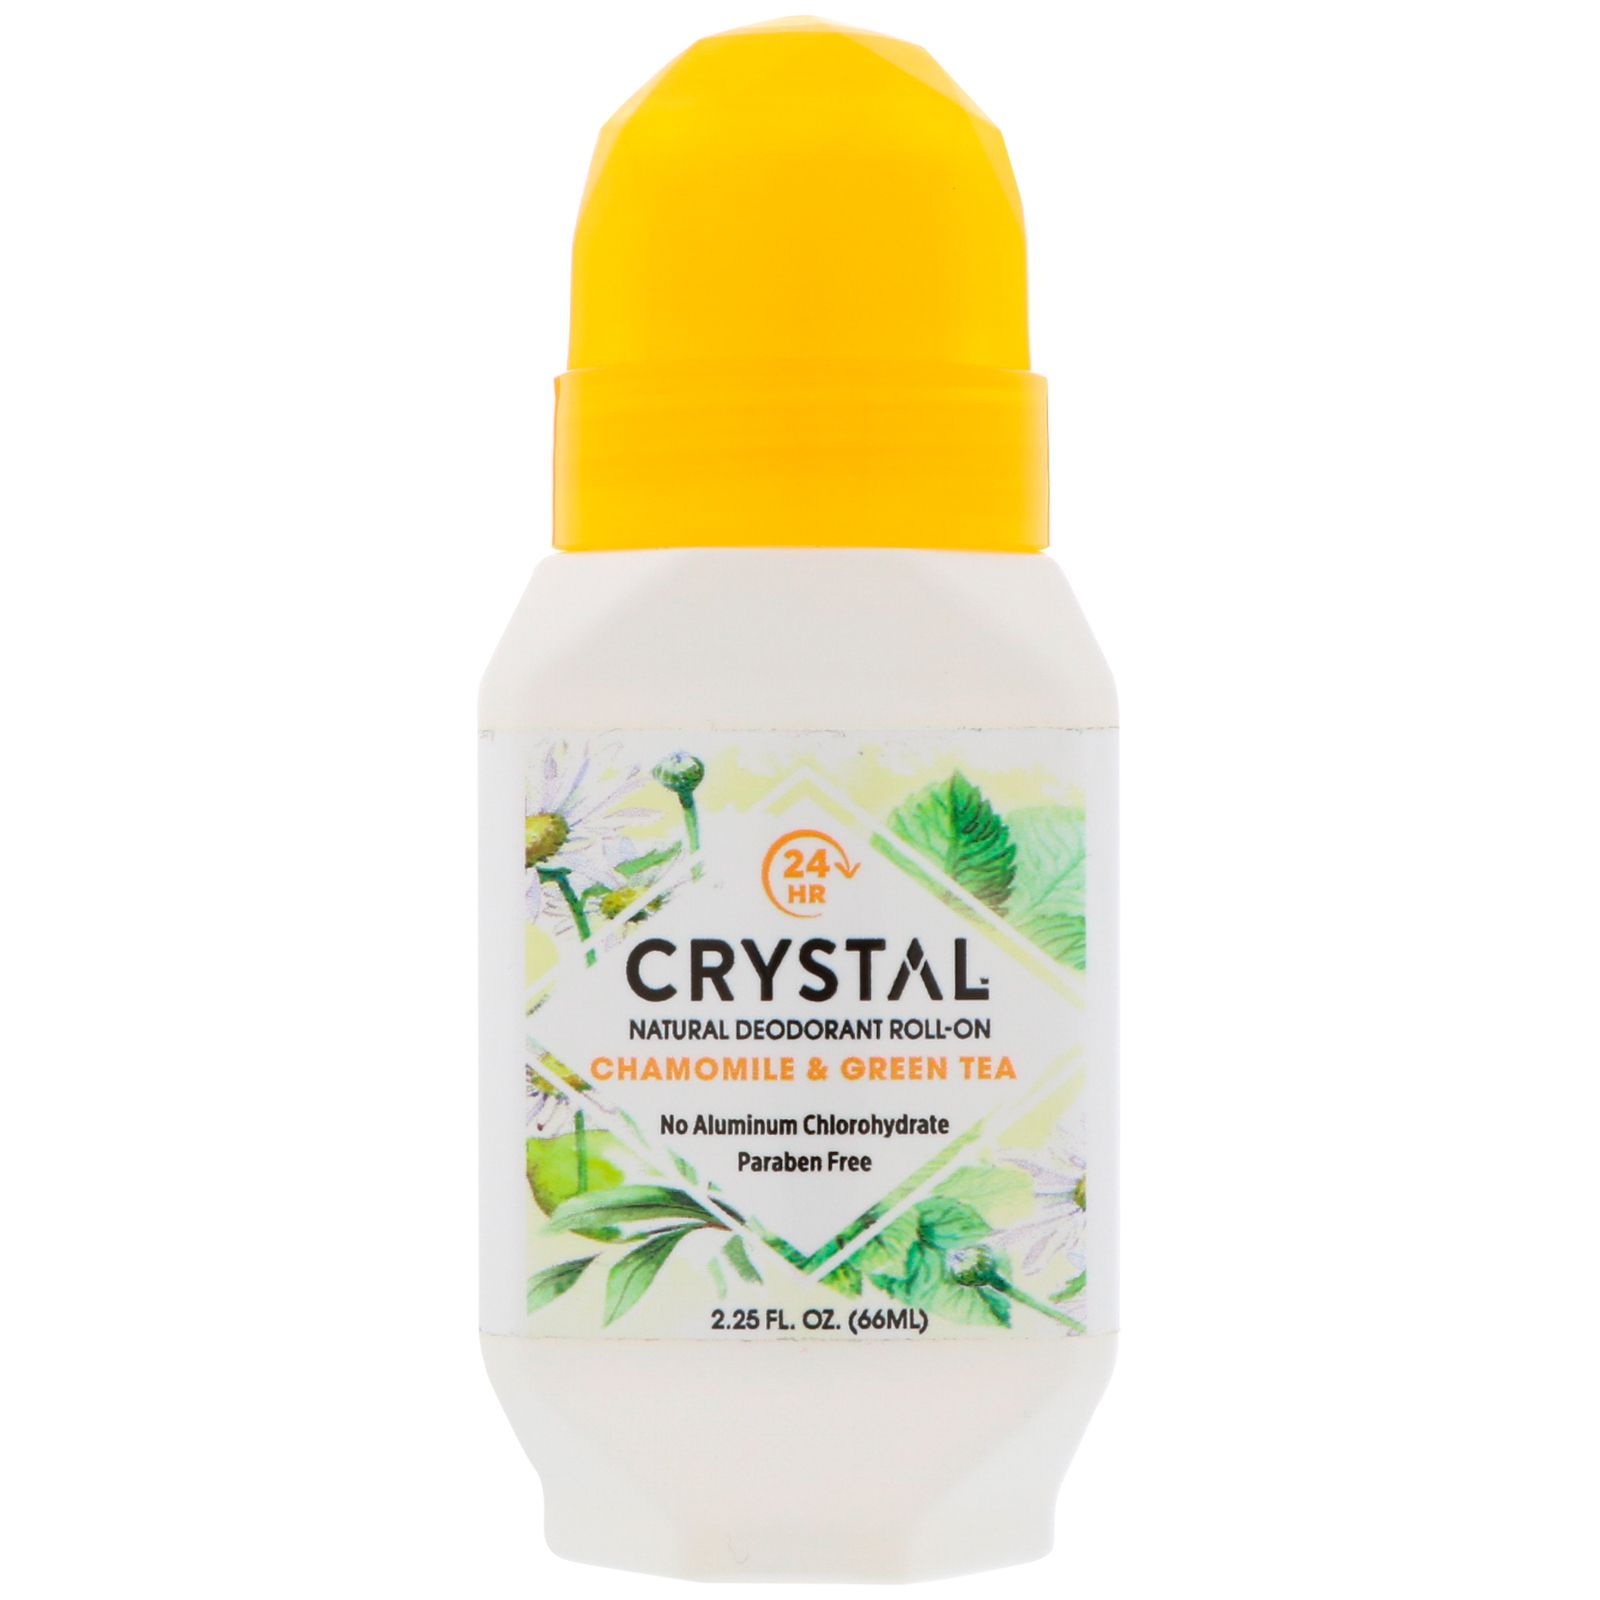 Crystal Body Deodorant Натуральный шариковый дезодорант ромашка & зеленый чай 2,25 ж. унц. (66 мл)